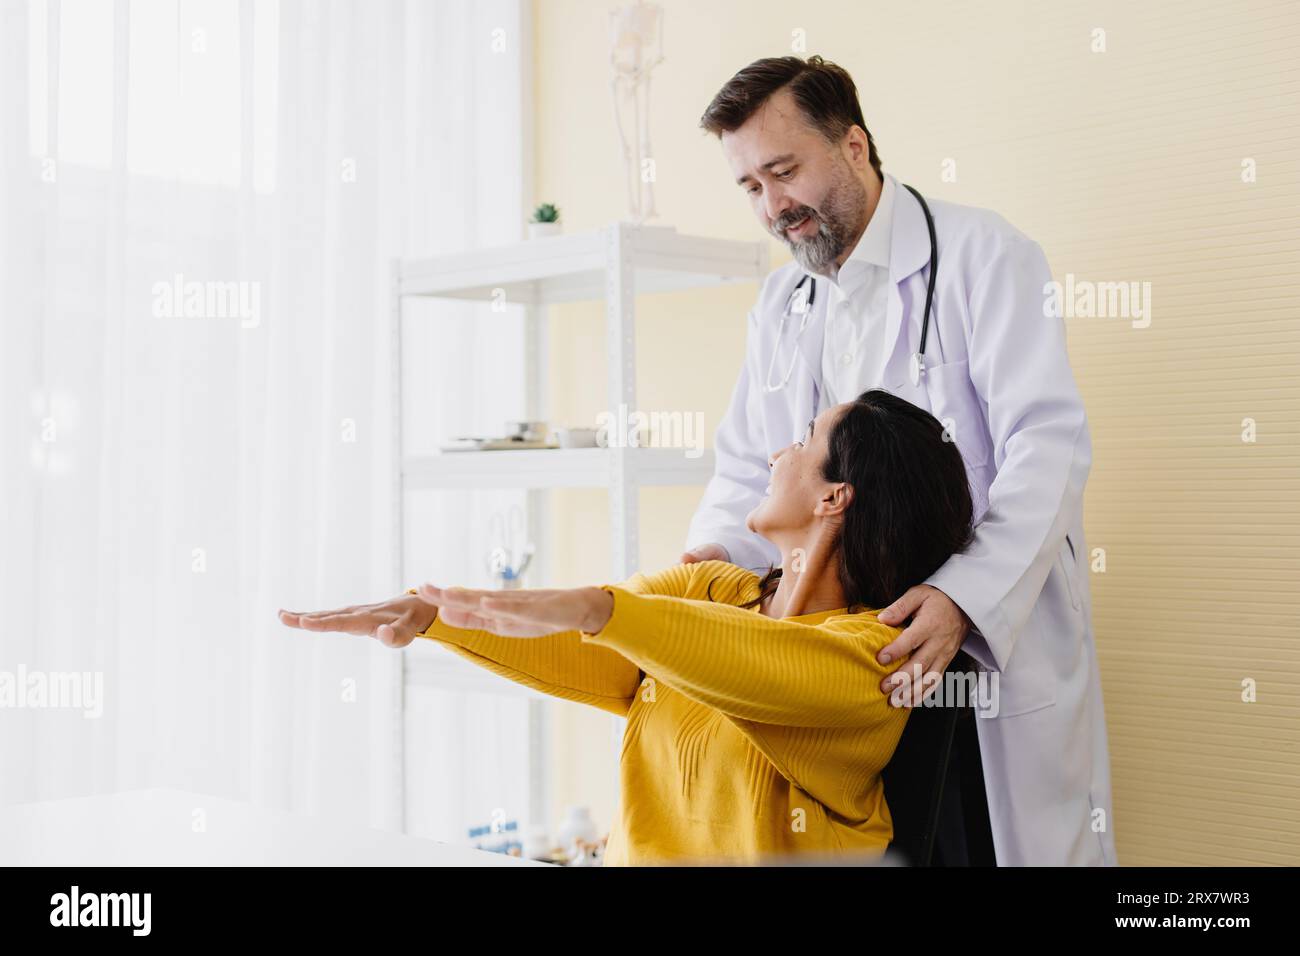 Paziente donna dolore muscolare braccio incontra un medico anziano per la terapia fisica guarigione e recupero schiena lavorare bene e lei molto felice Foto Stock